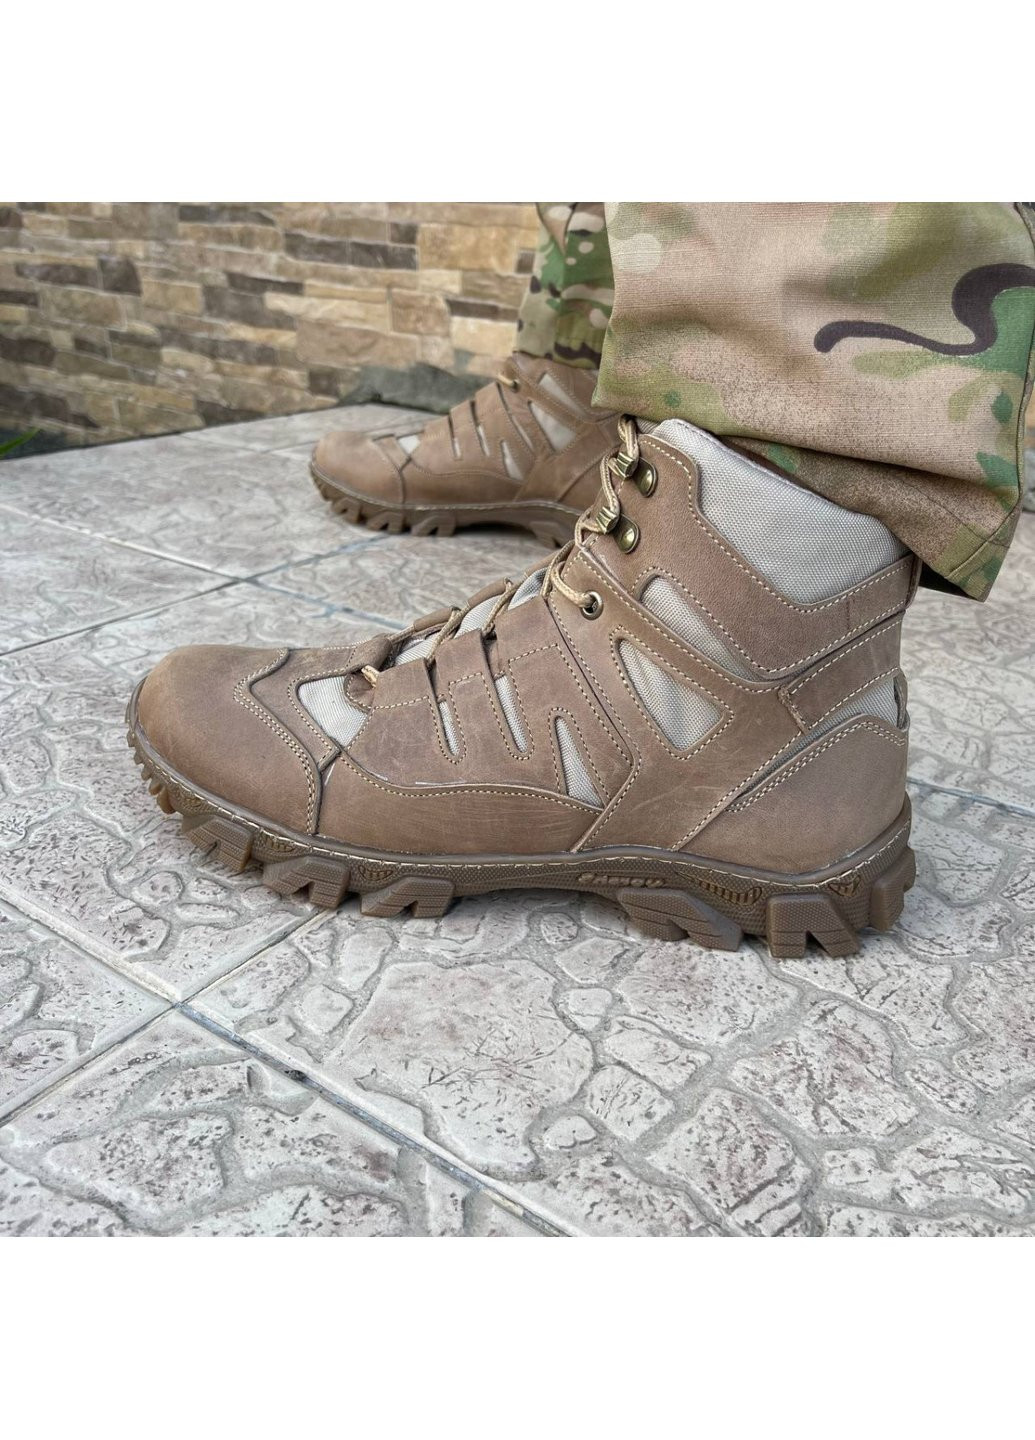 Коричневые осенние ботинки военные тактические всу (зсу) 7526 41 р 26,5 см коричневые Power